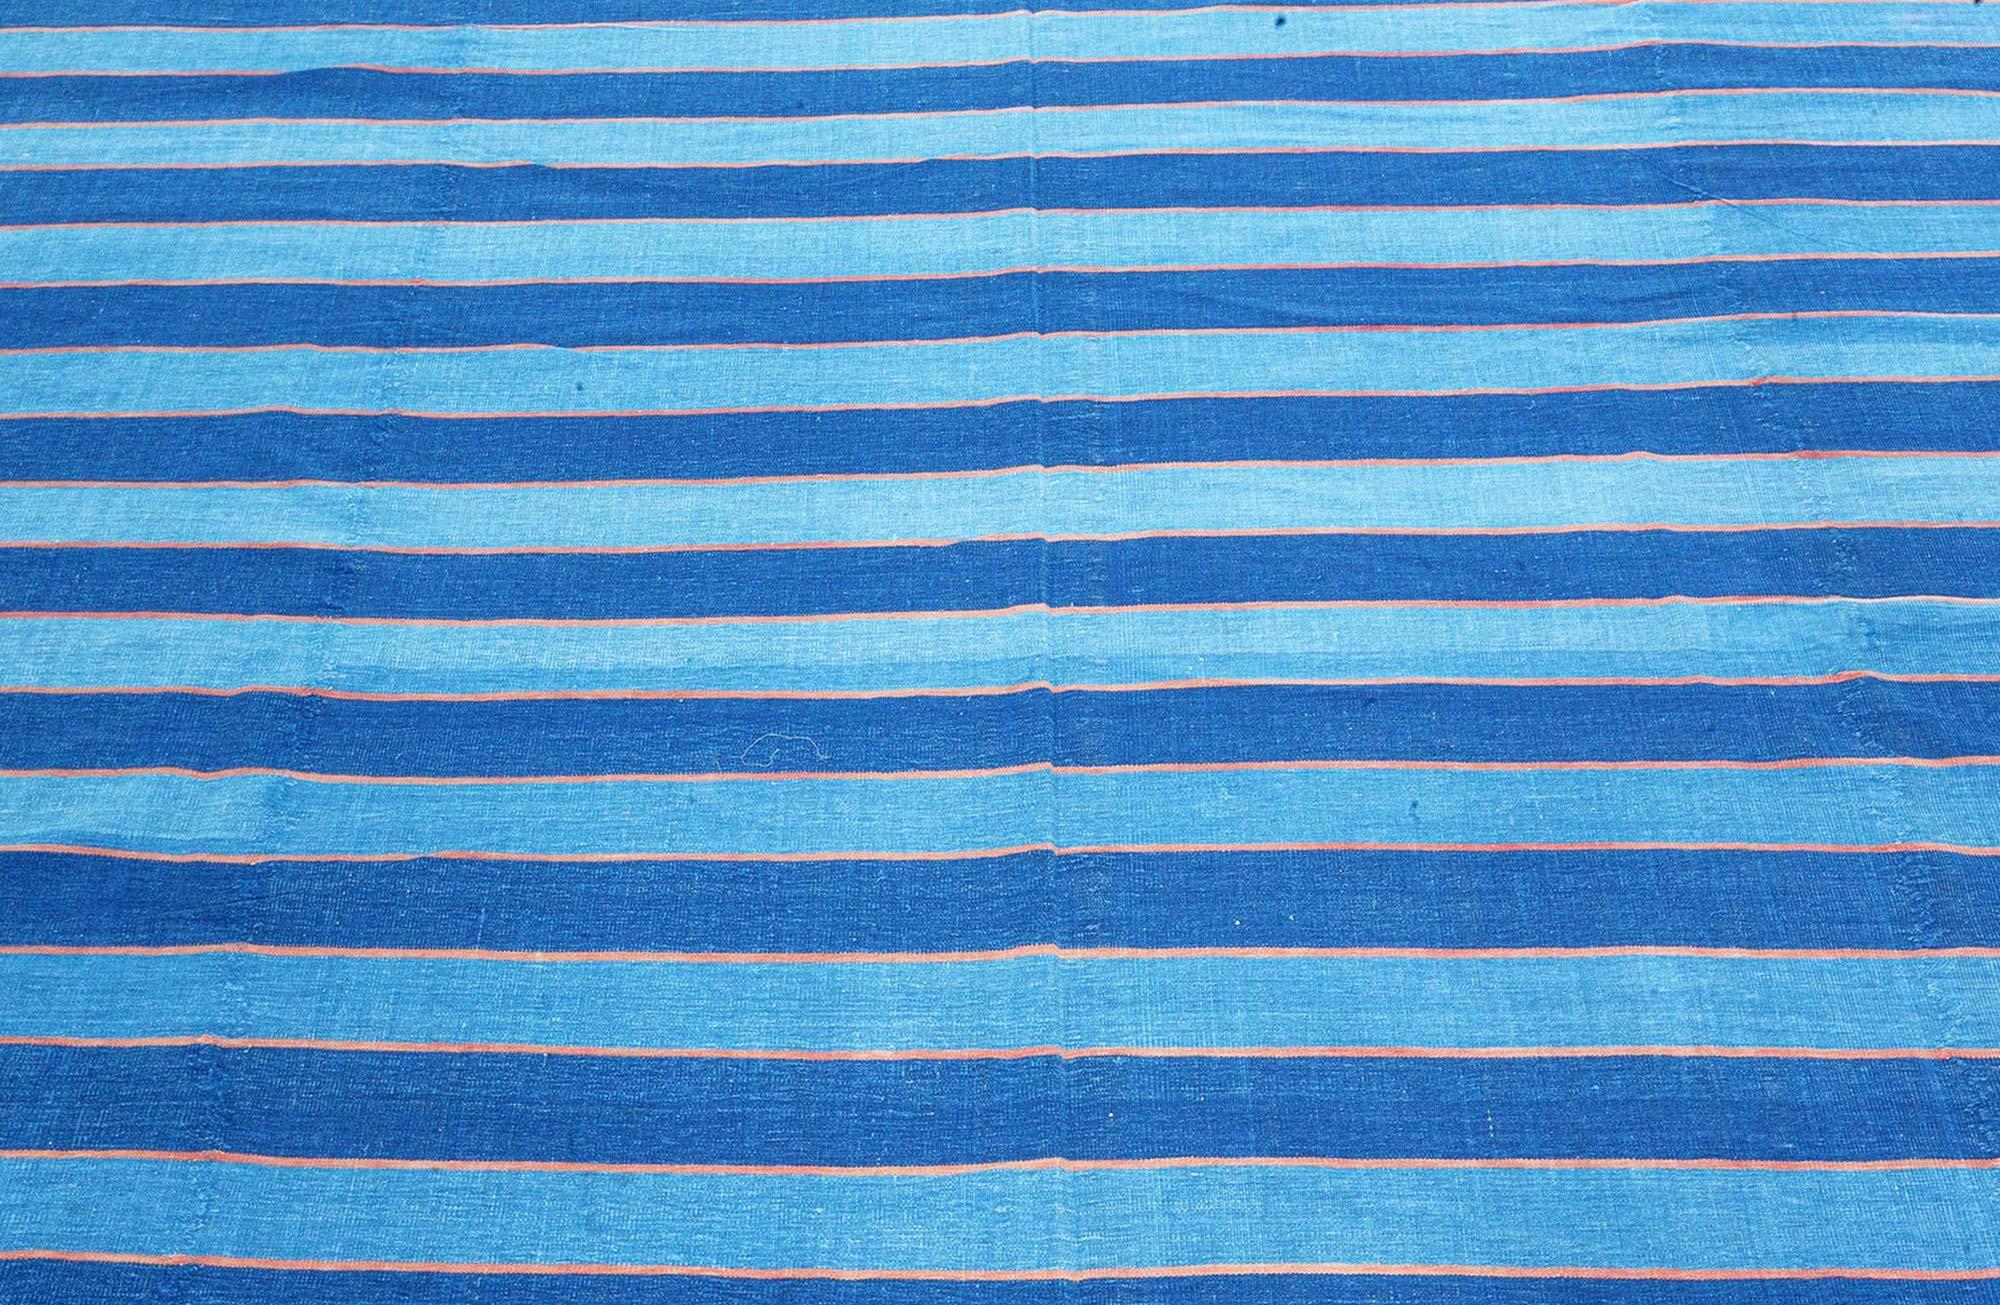 Vintage Indian Dhurrie Striped Blue Beige rug
Size: 15'2